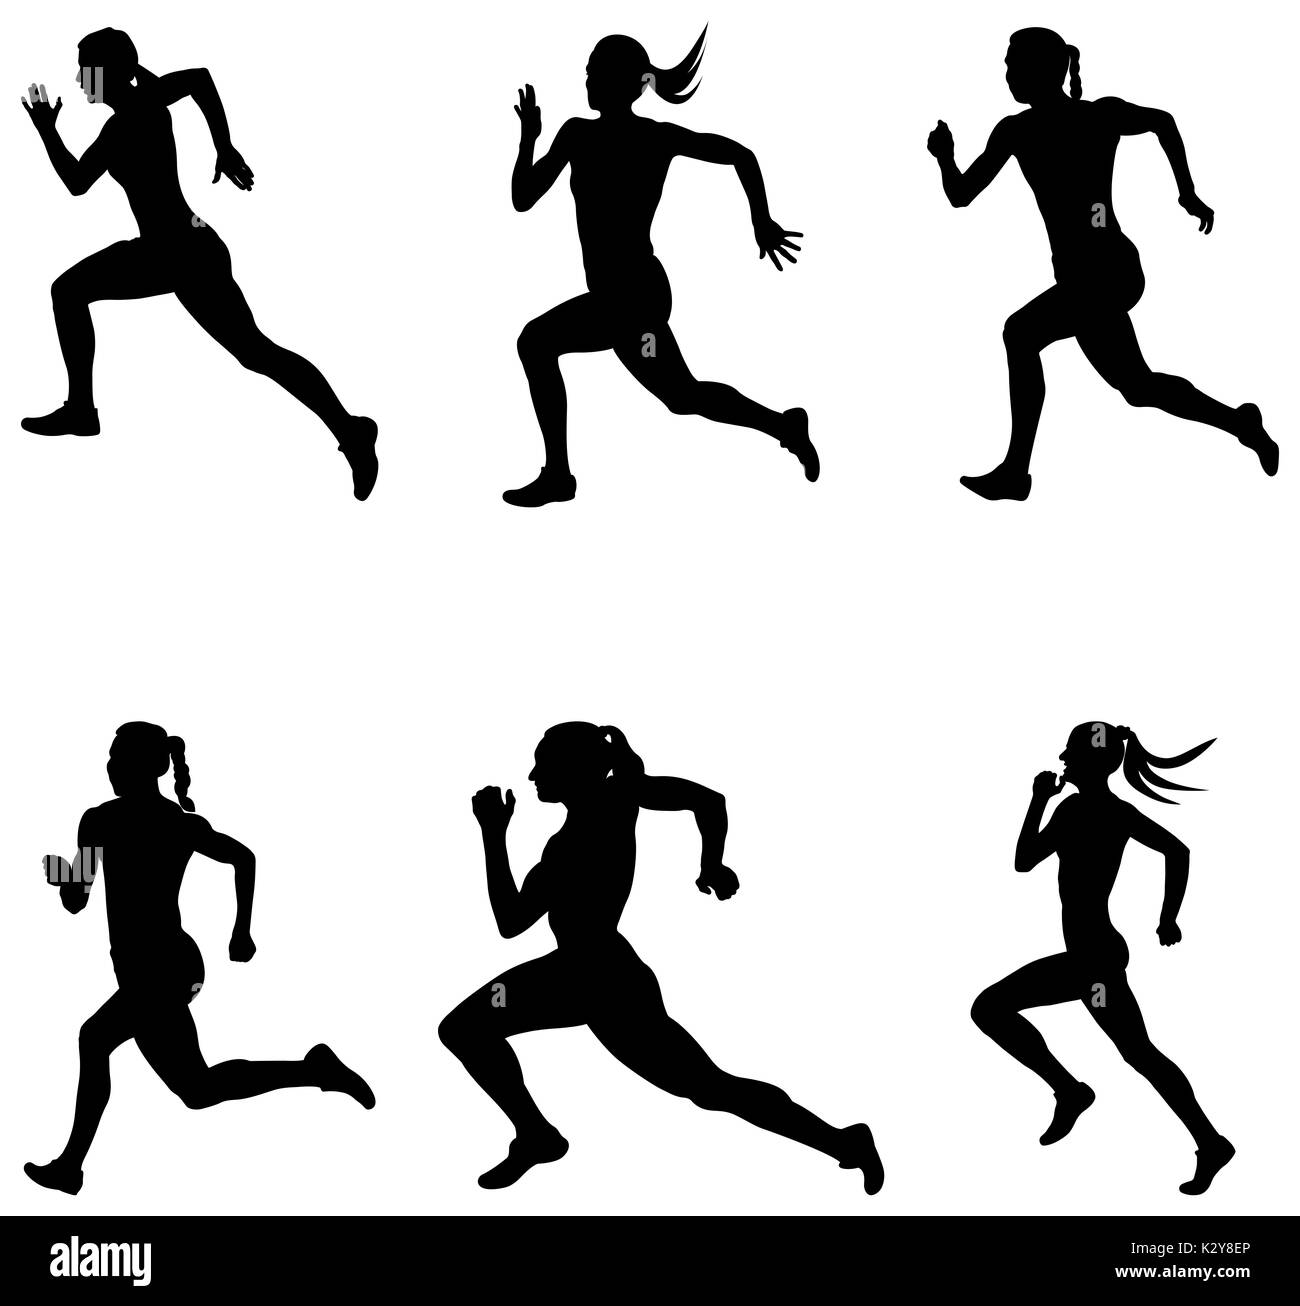 Les coureurs femme sprint set vector illustration Banque D'Images